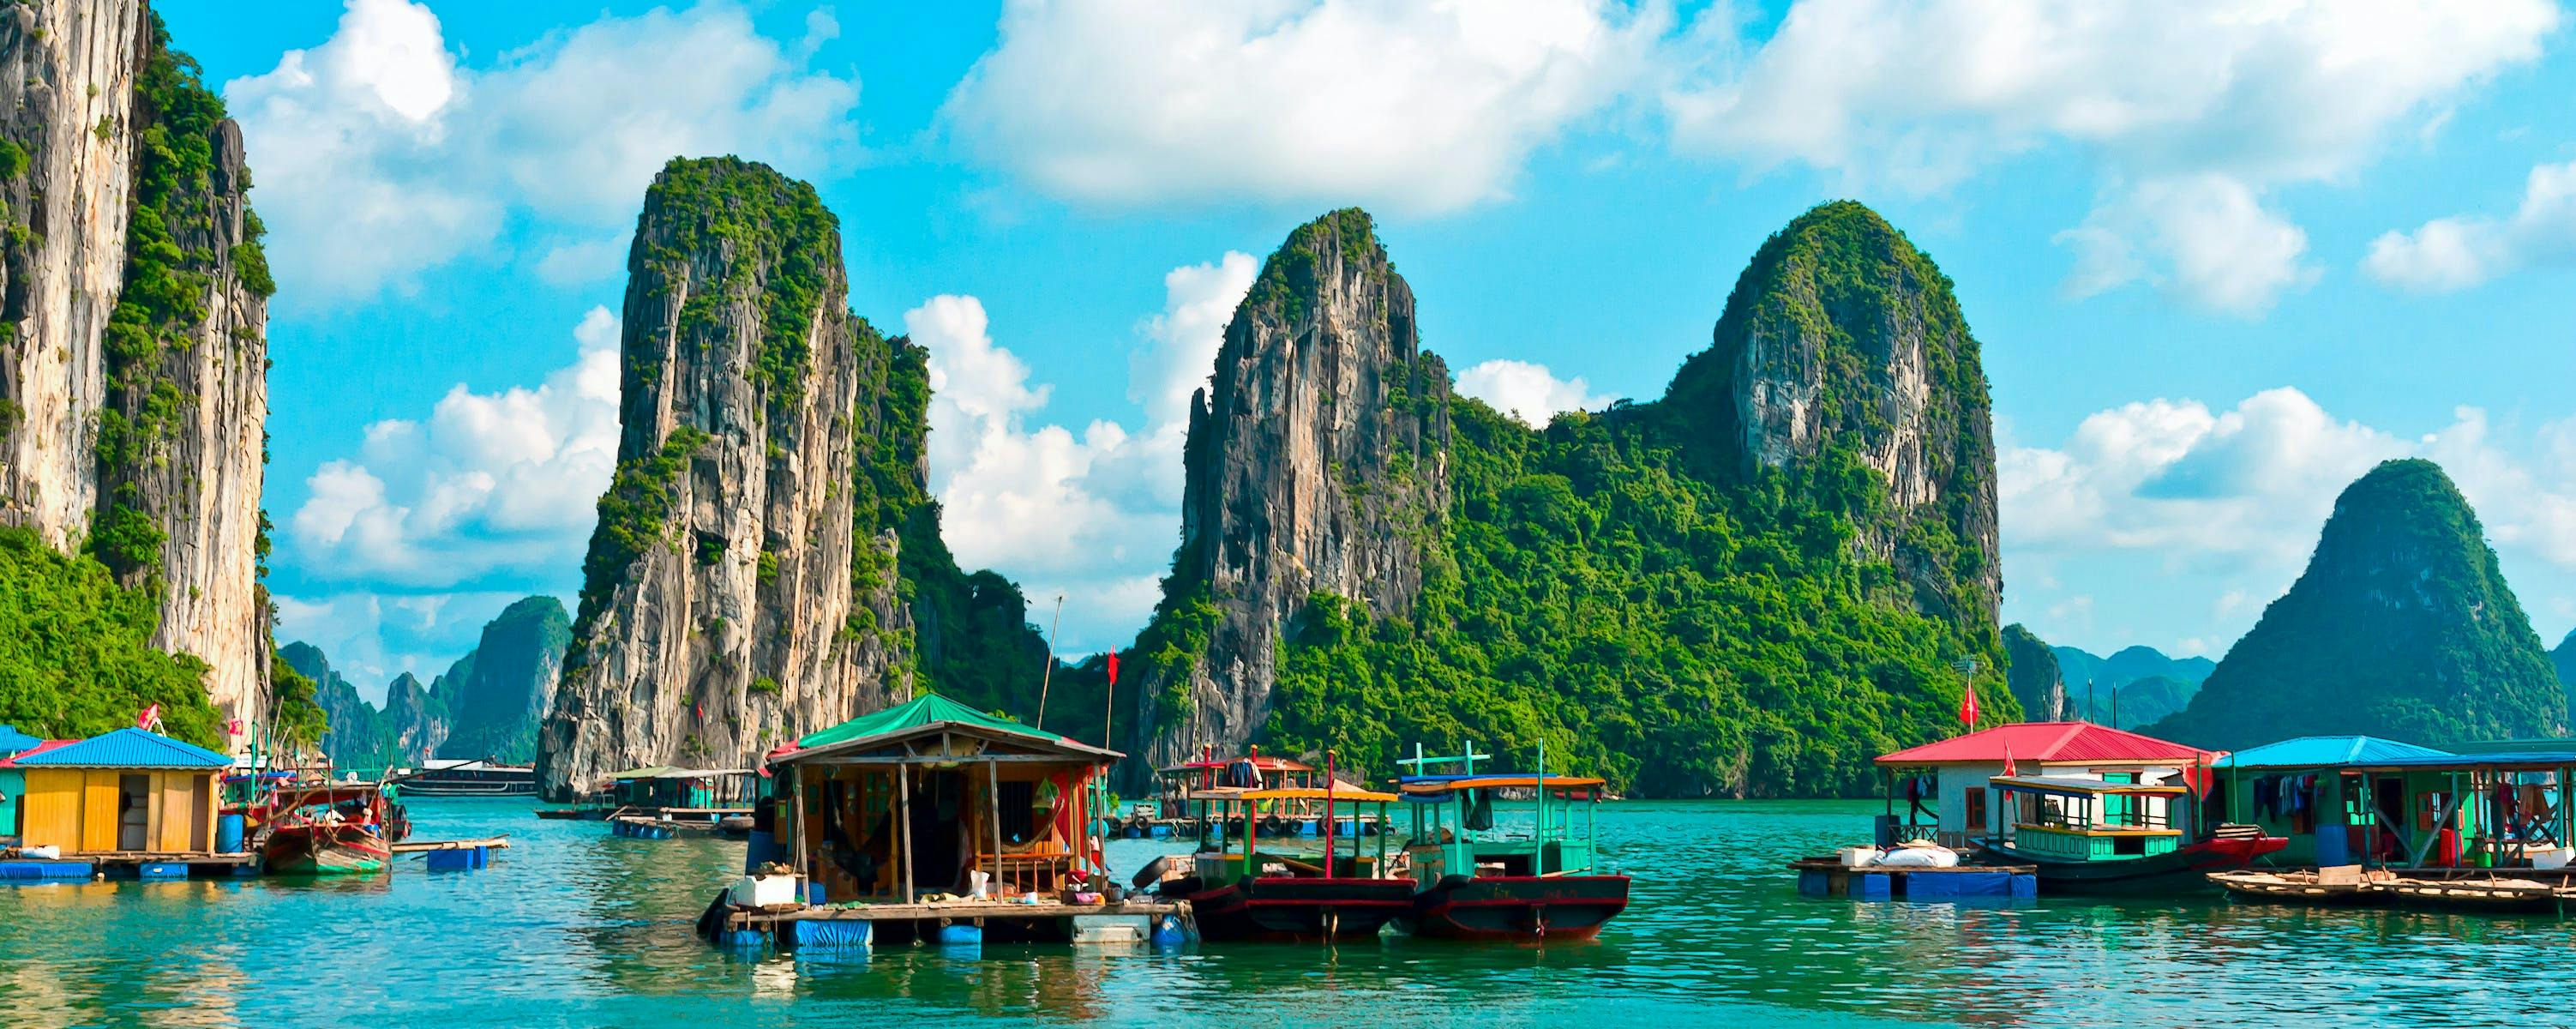 5 conseils pour voyager au Vietnam en sac à dos